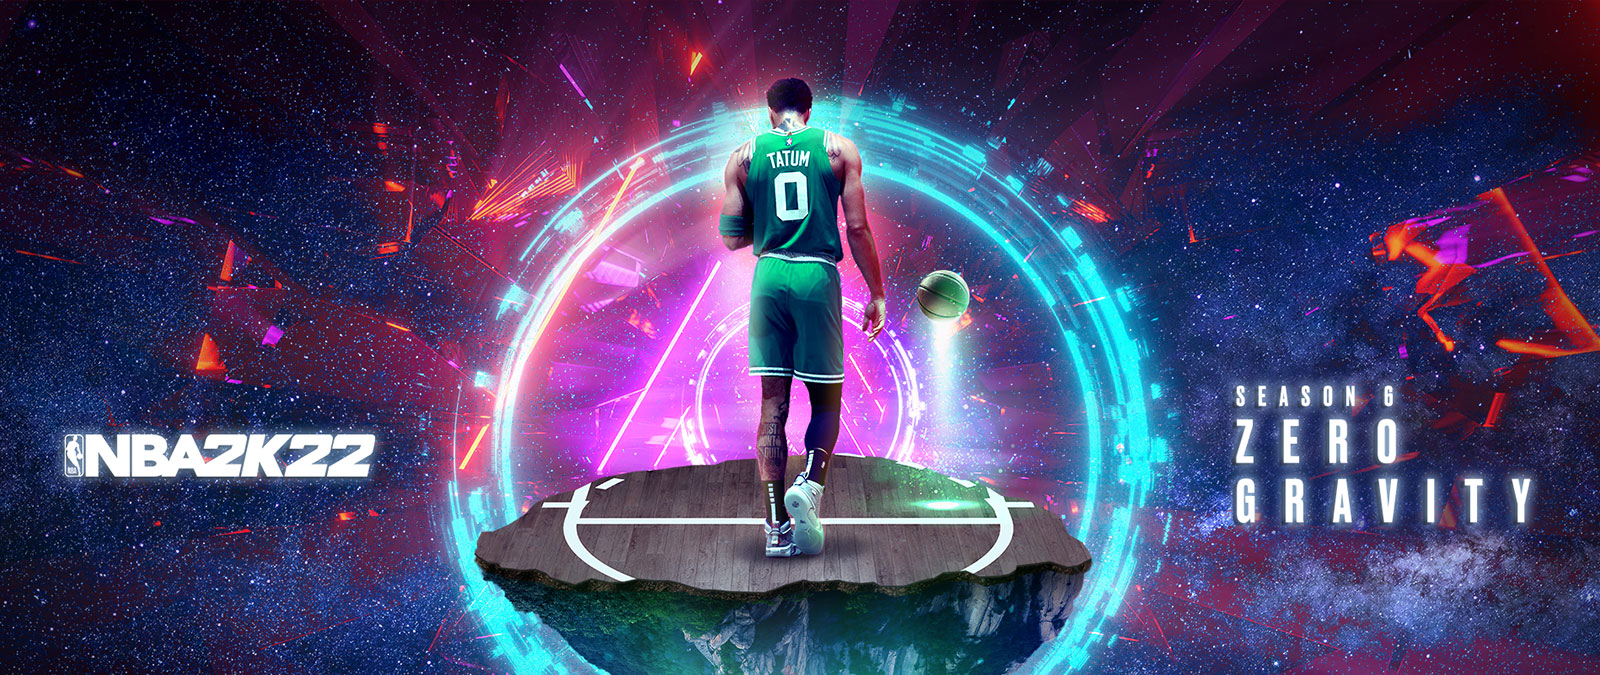 NBA 2K22, Season 6 Zero Gravity, Tatum seisoo avaruudessa leijuvalla koripallokentän palalla energiarenkaiden ympäröimänä.